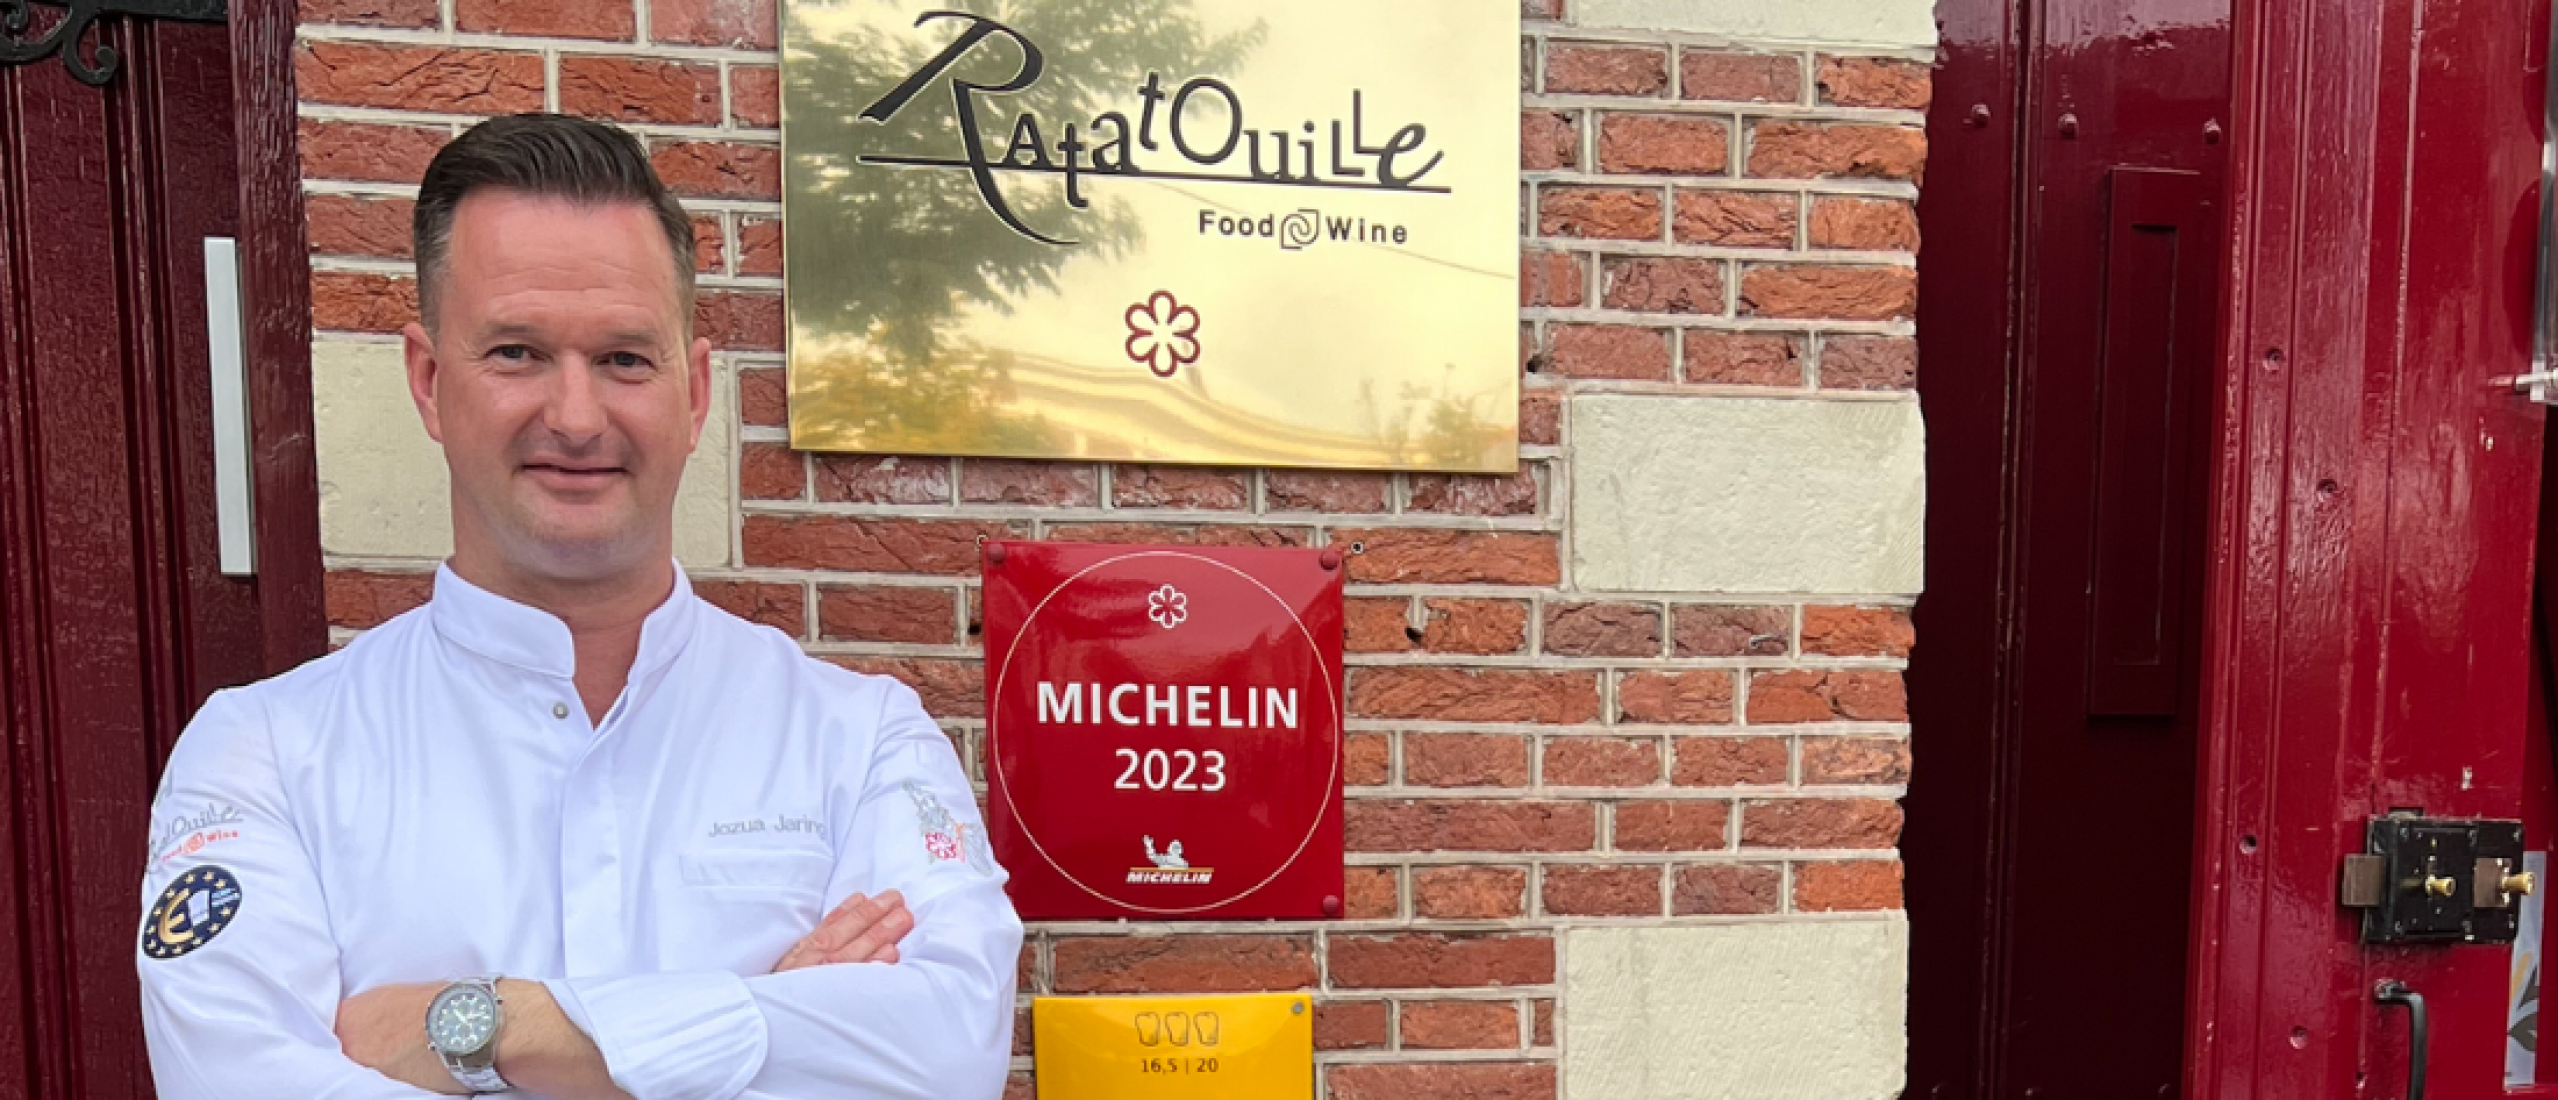 Sterrenrestaurant Ratatouille Food & Wine* bestaat 10 jaar.